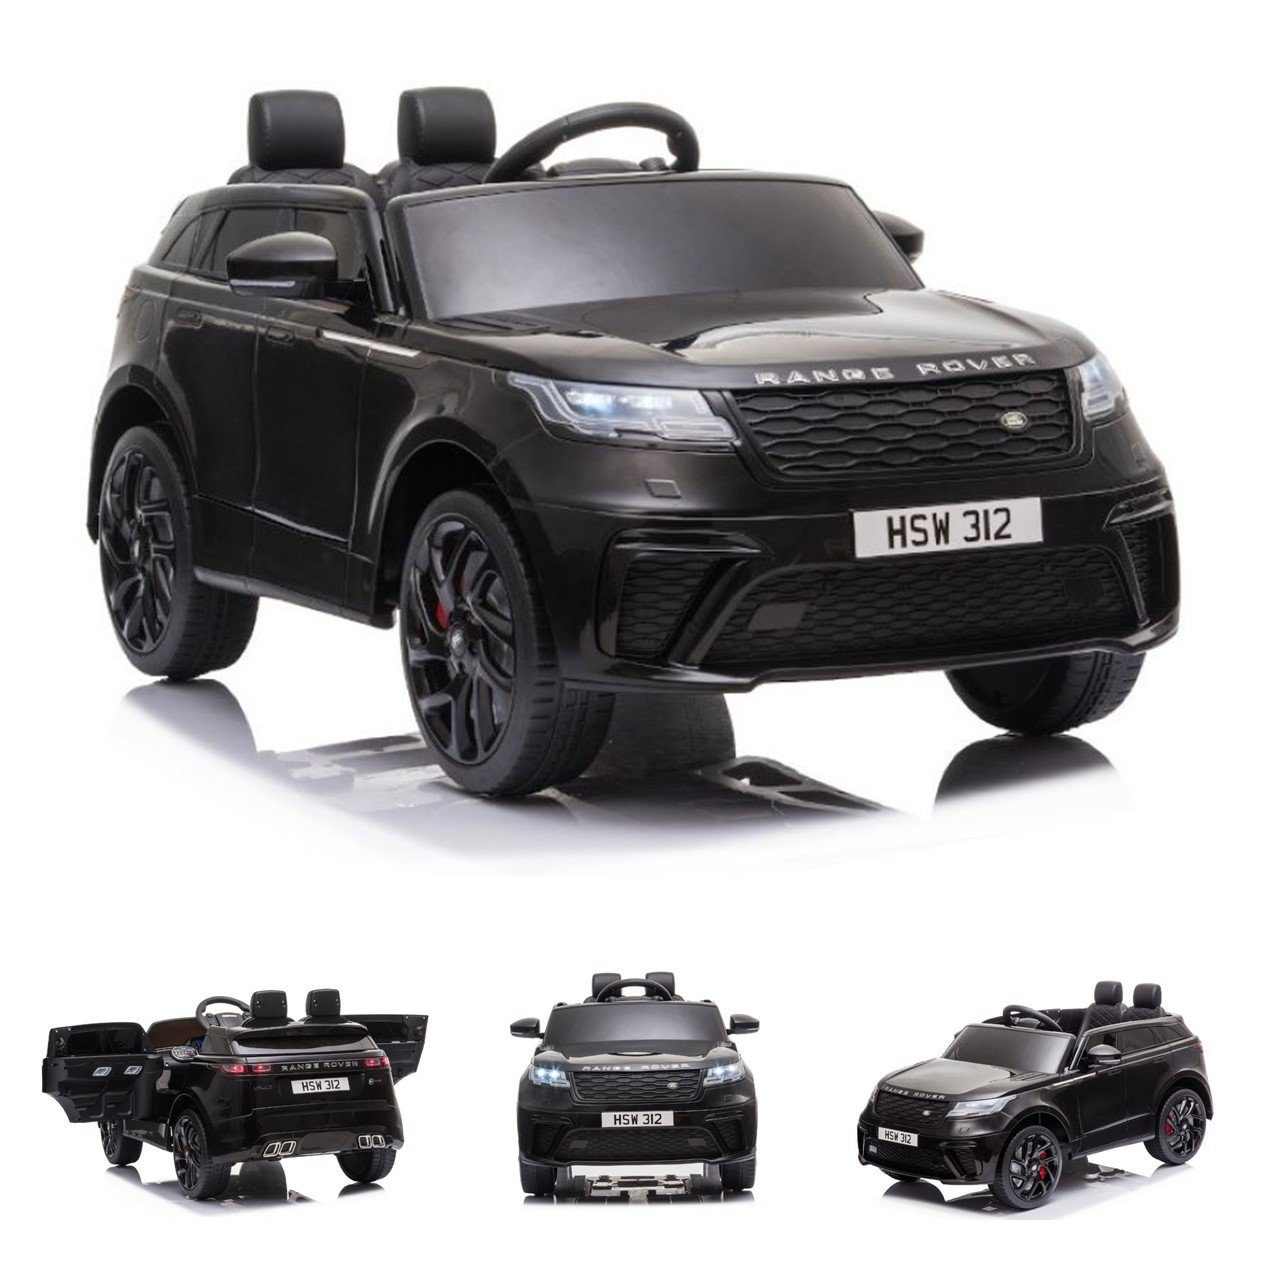 ES-Toys Elektro-Kinderauto Kinderauto Range Rover Velar, Belastbarkeit 30 kg, EVA-Reifen Stoßdämpfer Scheinwerfer